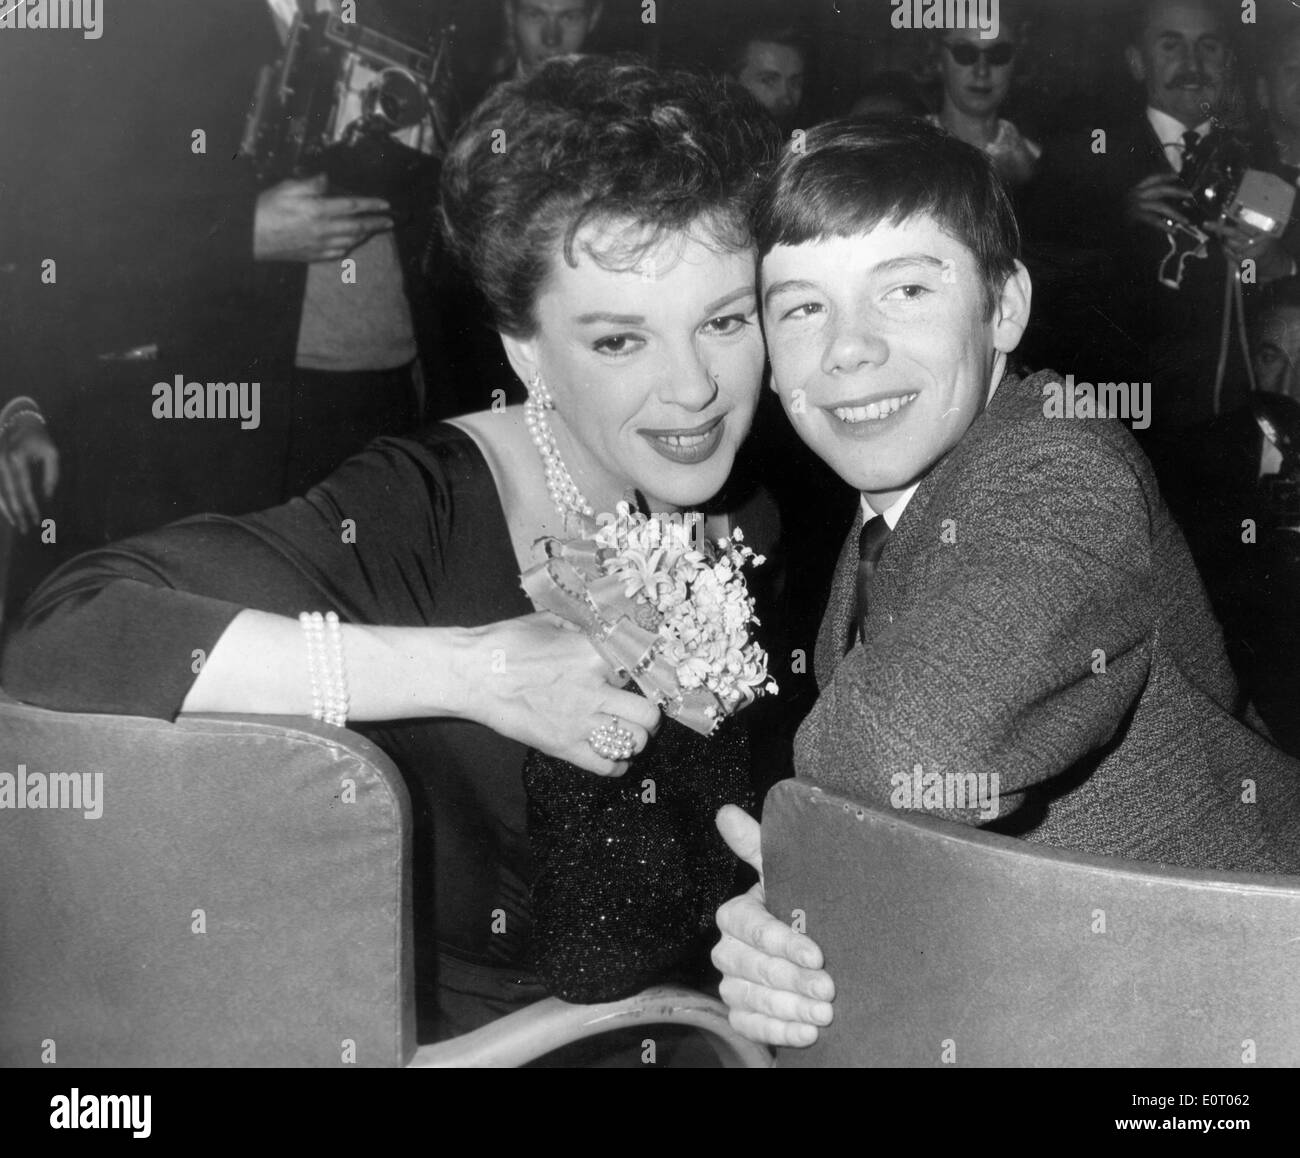 L'attrice Judy Garland con un giovane fan Foto Stock